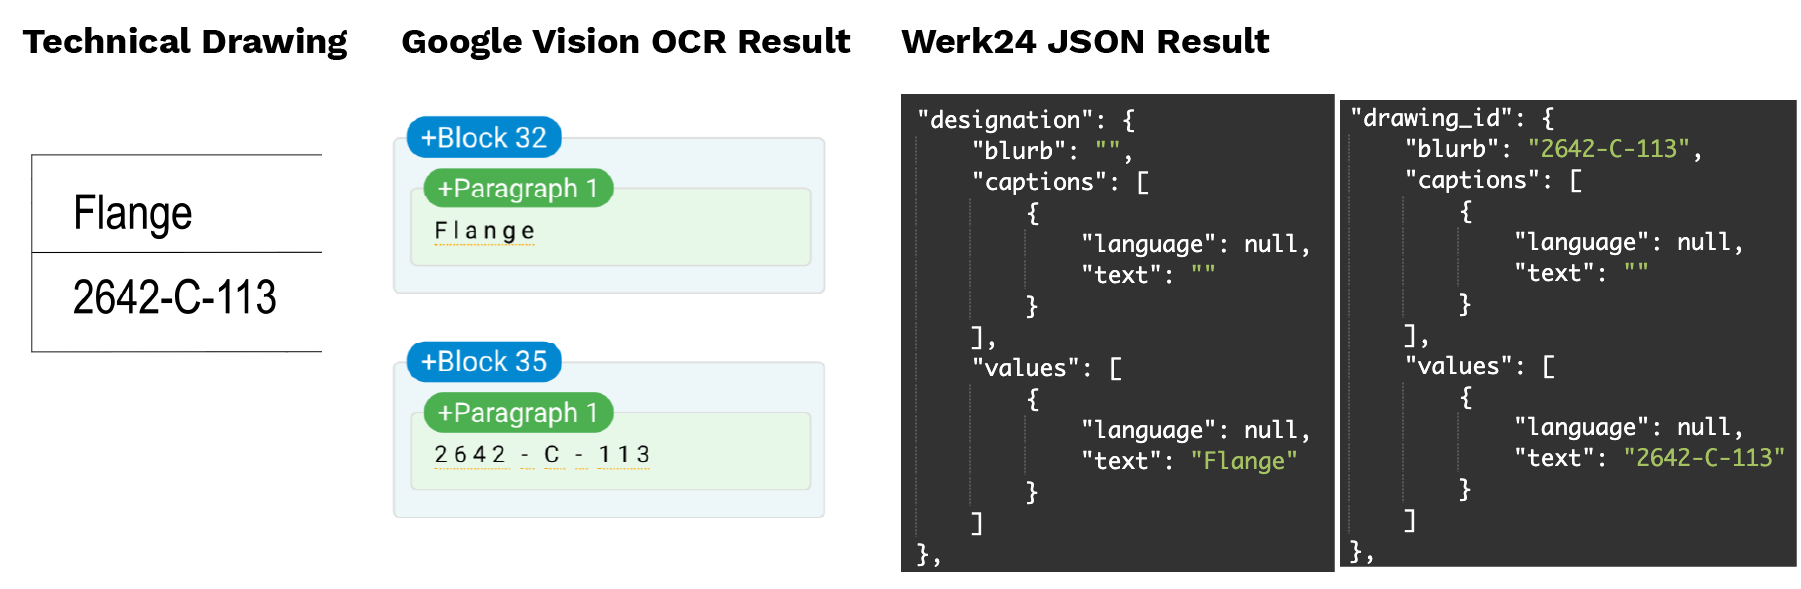 Technische Zeichnung Schriftfeld Vergleich zwischen Google Vision OCR und Werk24 JSON